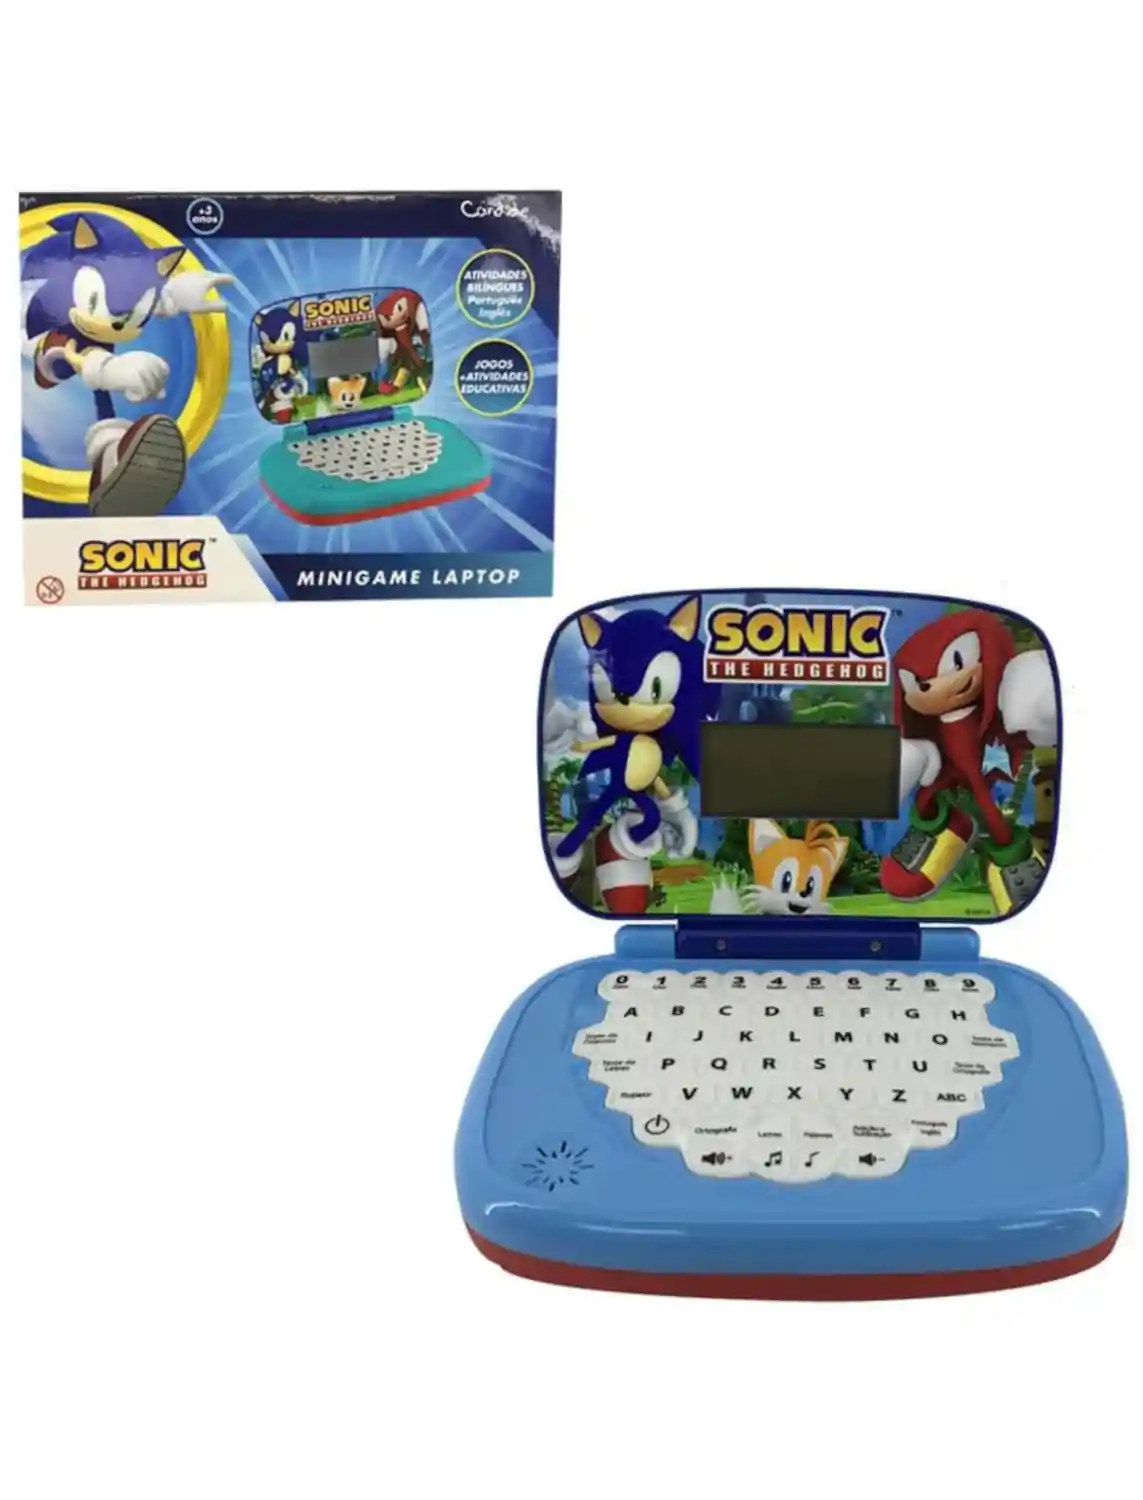 Sonic-laptop-amazon